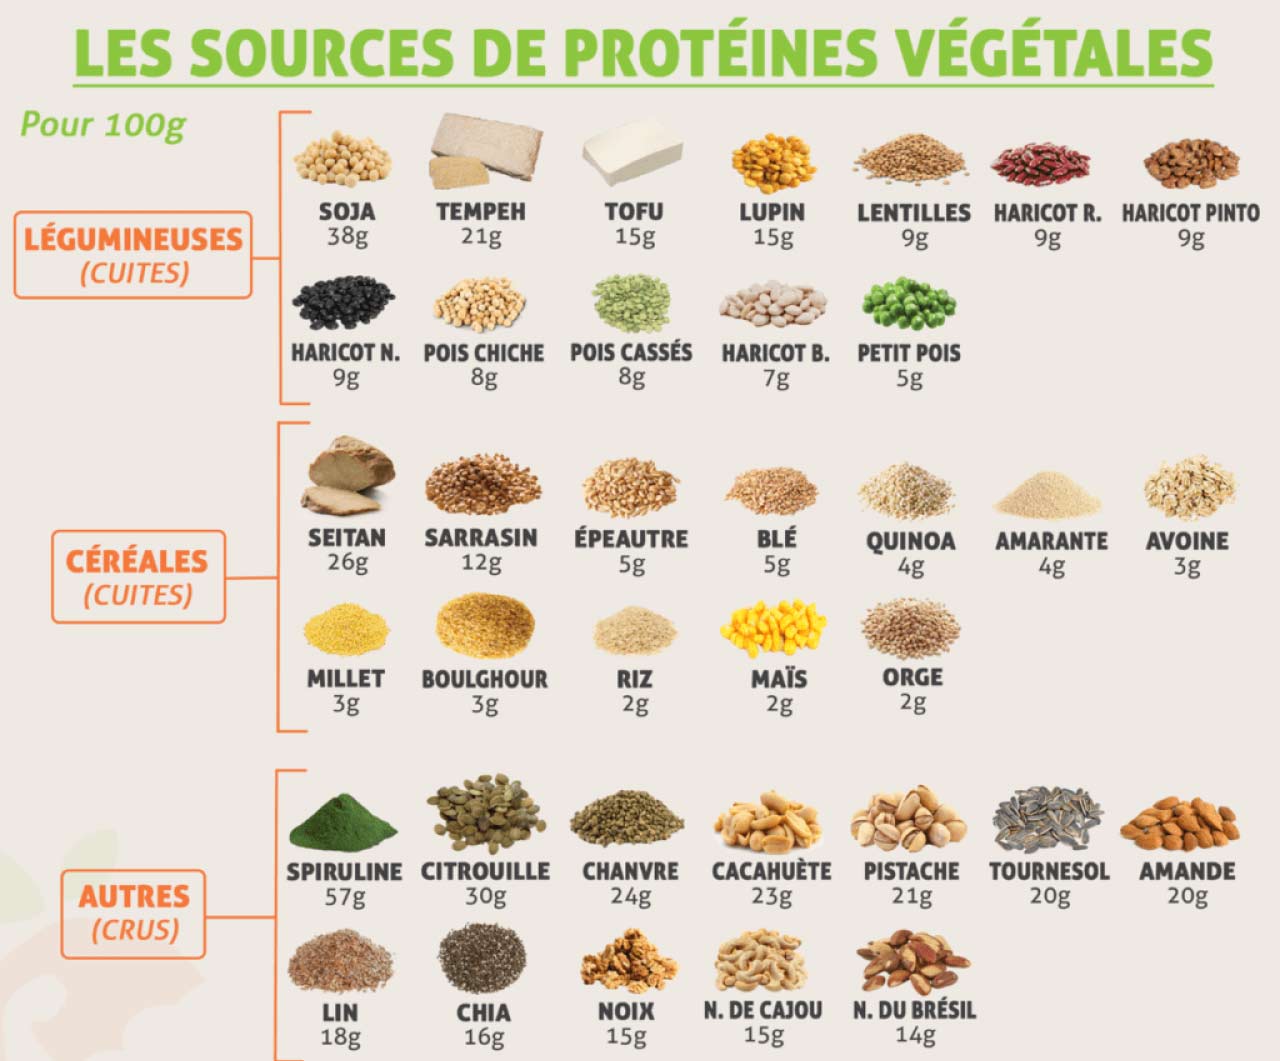 Varier les sources de protéines végétales